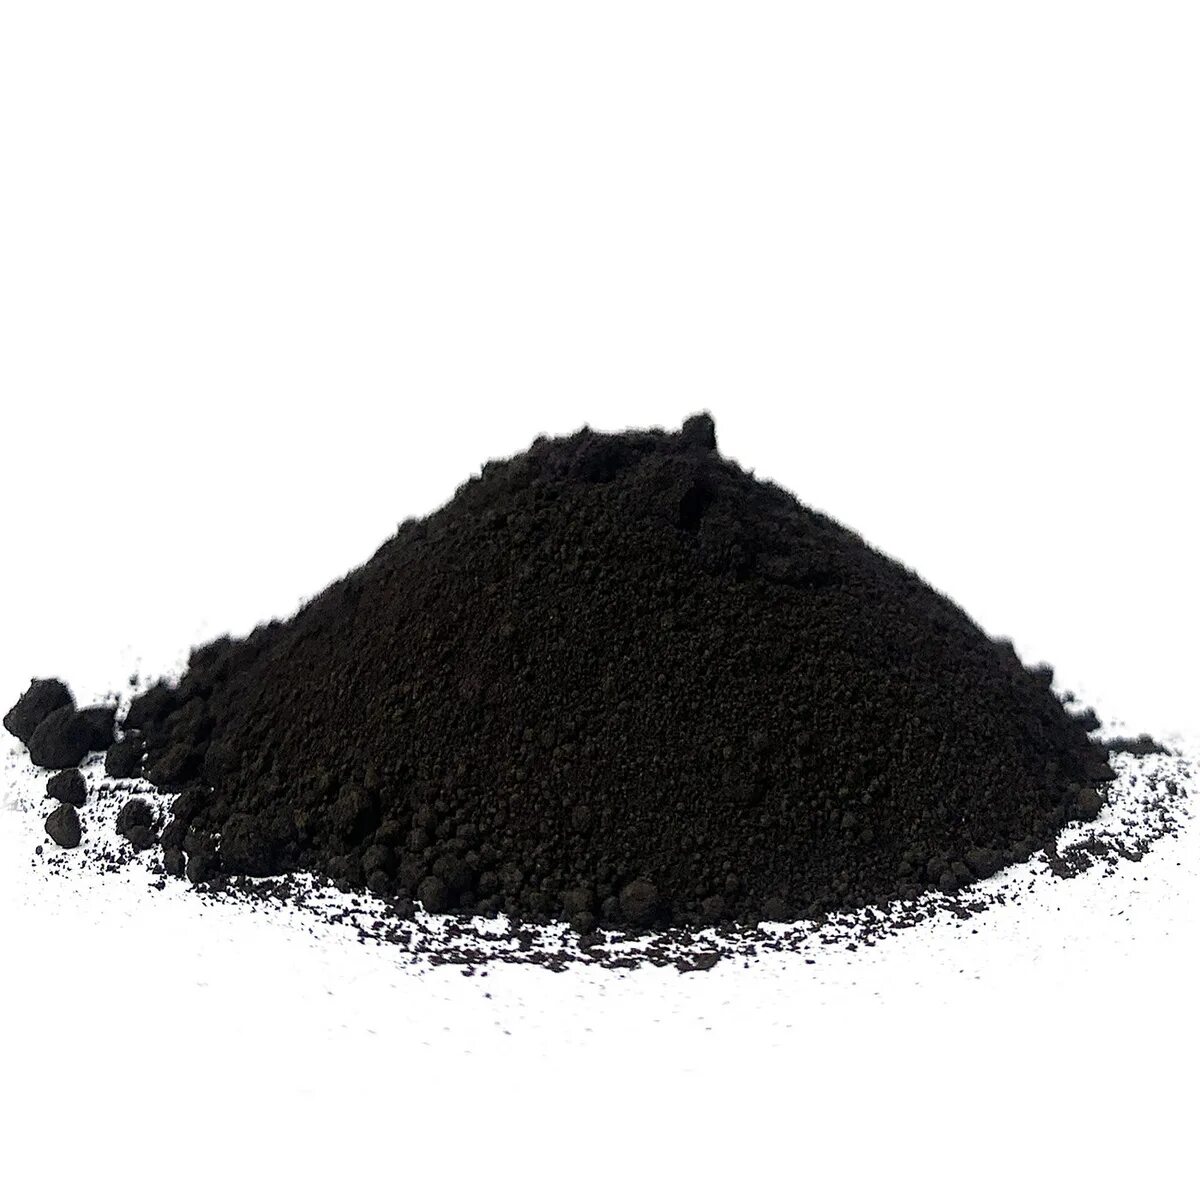 Пигмент Iron Oxide Black 722 черный. Tongchem пигмент. Черный пигмент Tongchem. Пигмент черный КНР 722 25 кг. Сажа строительная купить